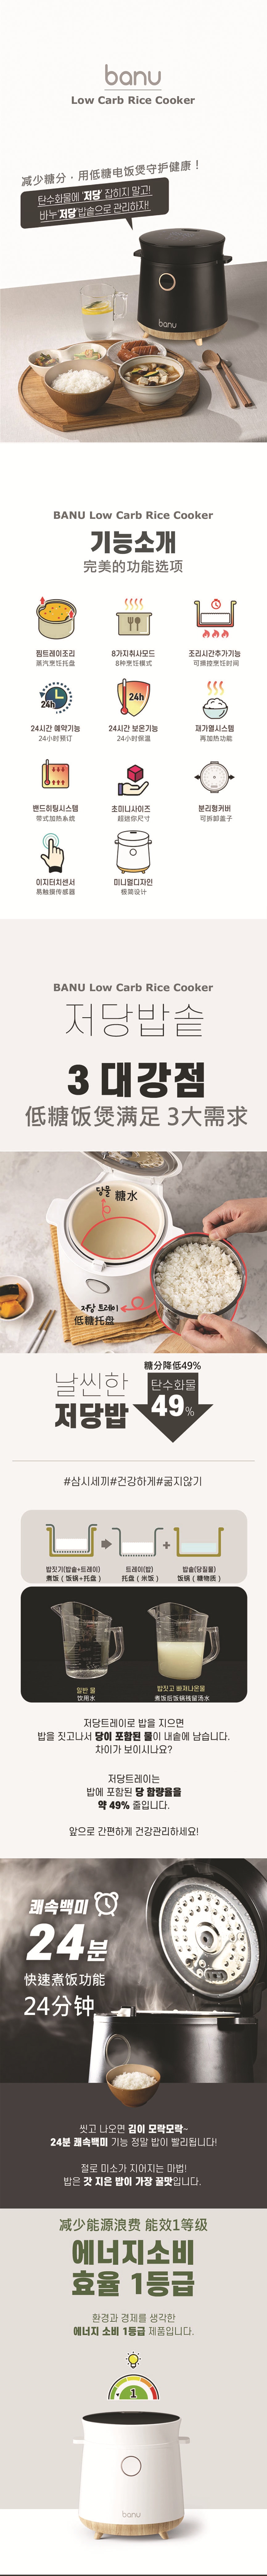 韩国 BANU 减糖电饭煲 低碳水化合物 多功能 LED 一键式烹饪 黑色 1.5 升 脱糖电饭煲 